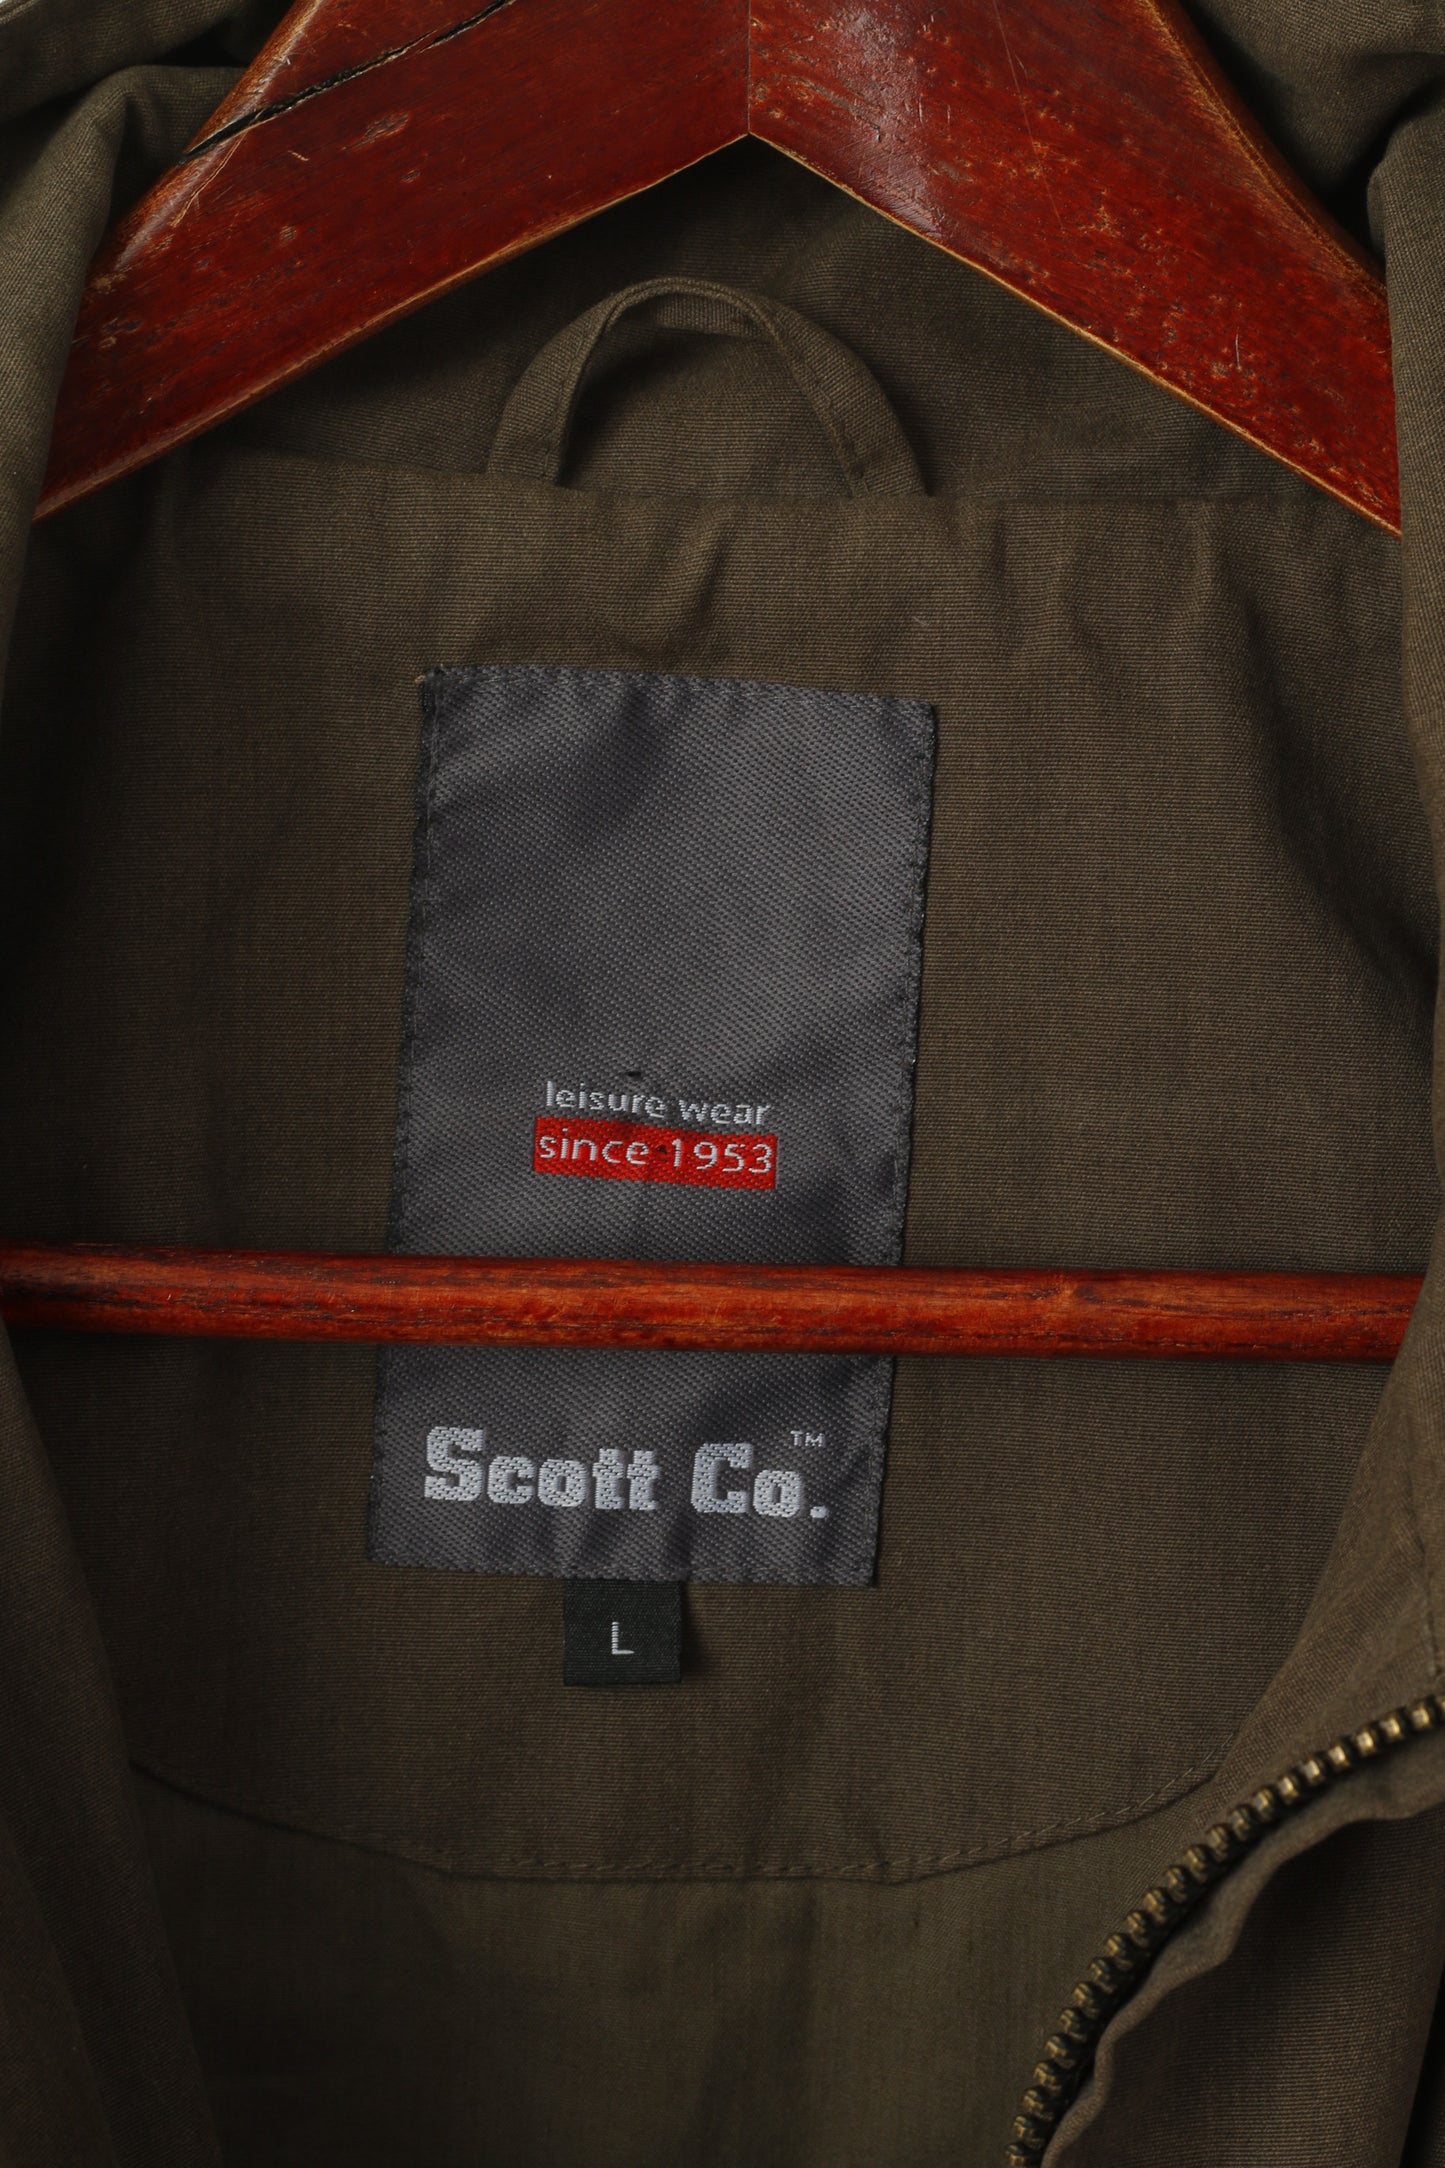 Scott Co. Giacca da uomo L Verde Marrone Cerniera completa Tasche in cotone leggero militare